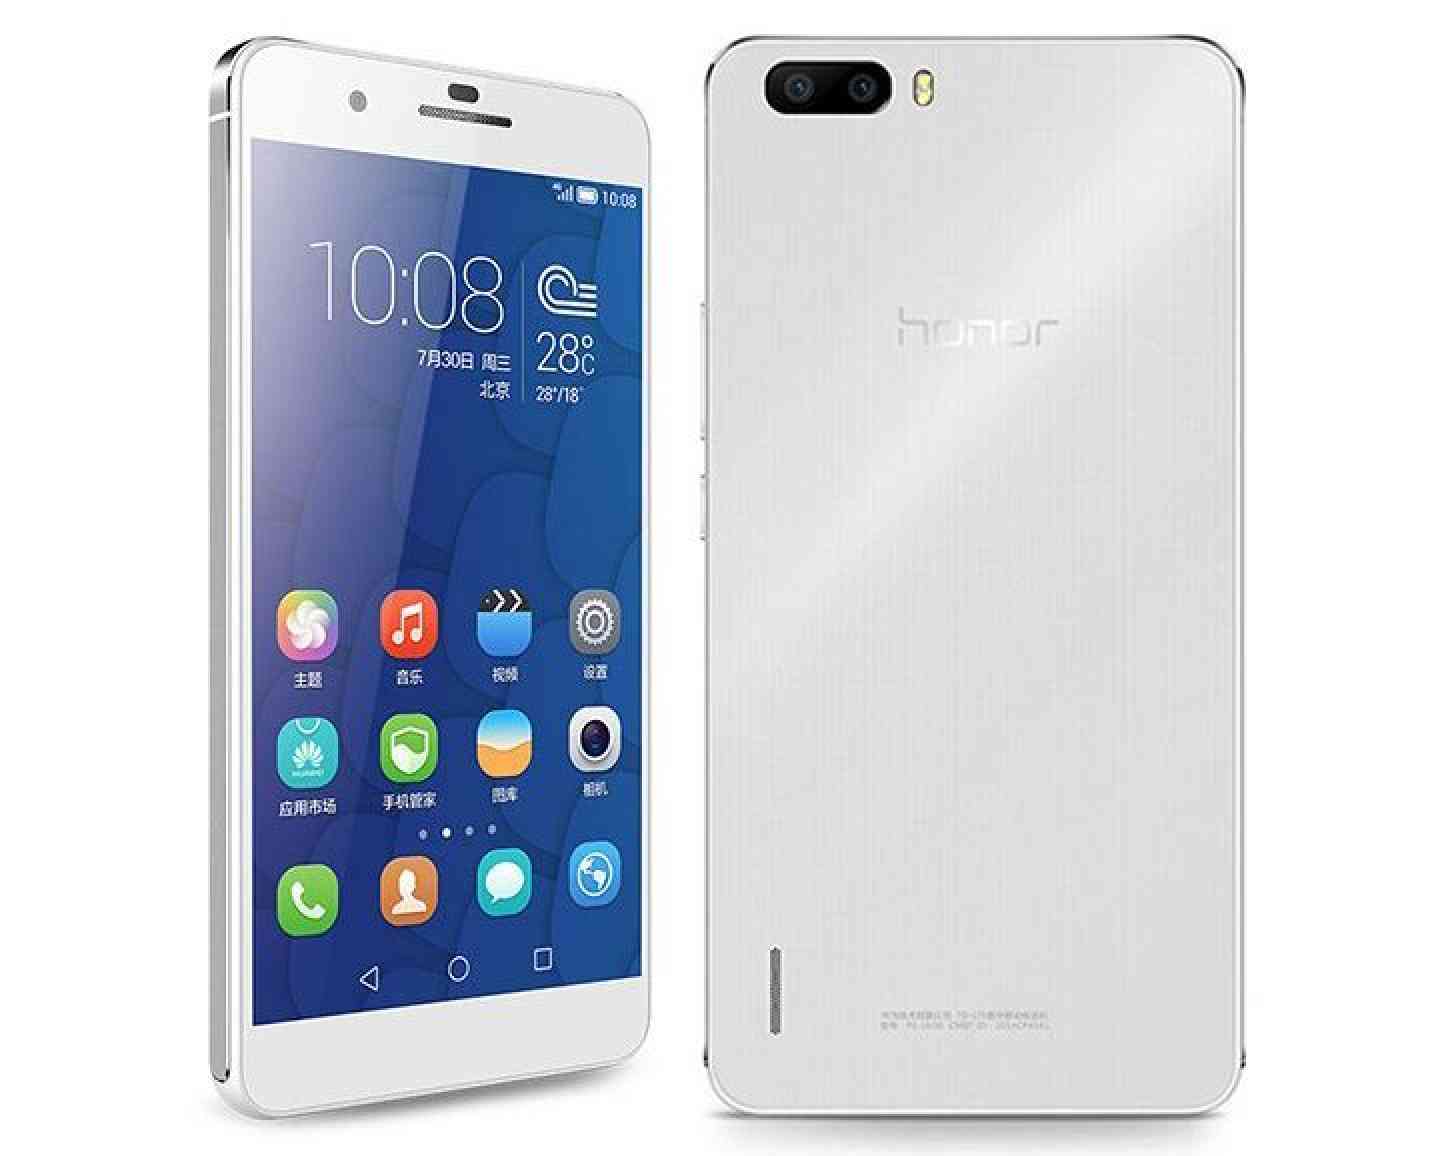 Huawei Honor 6 Plus white